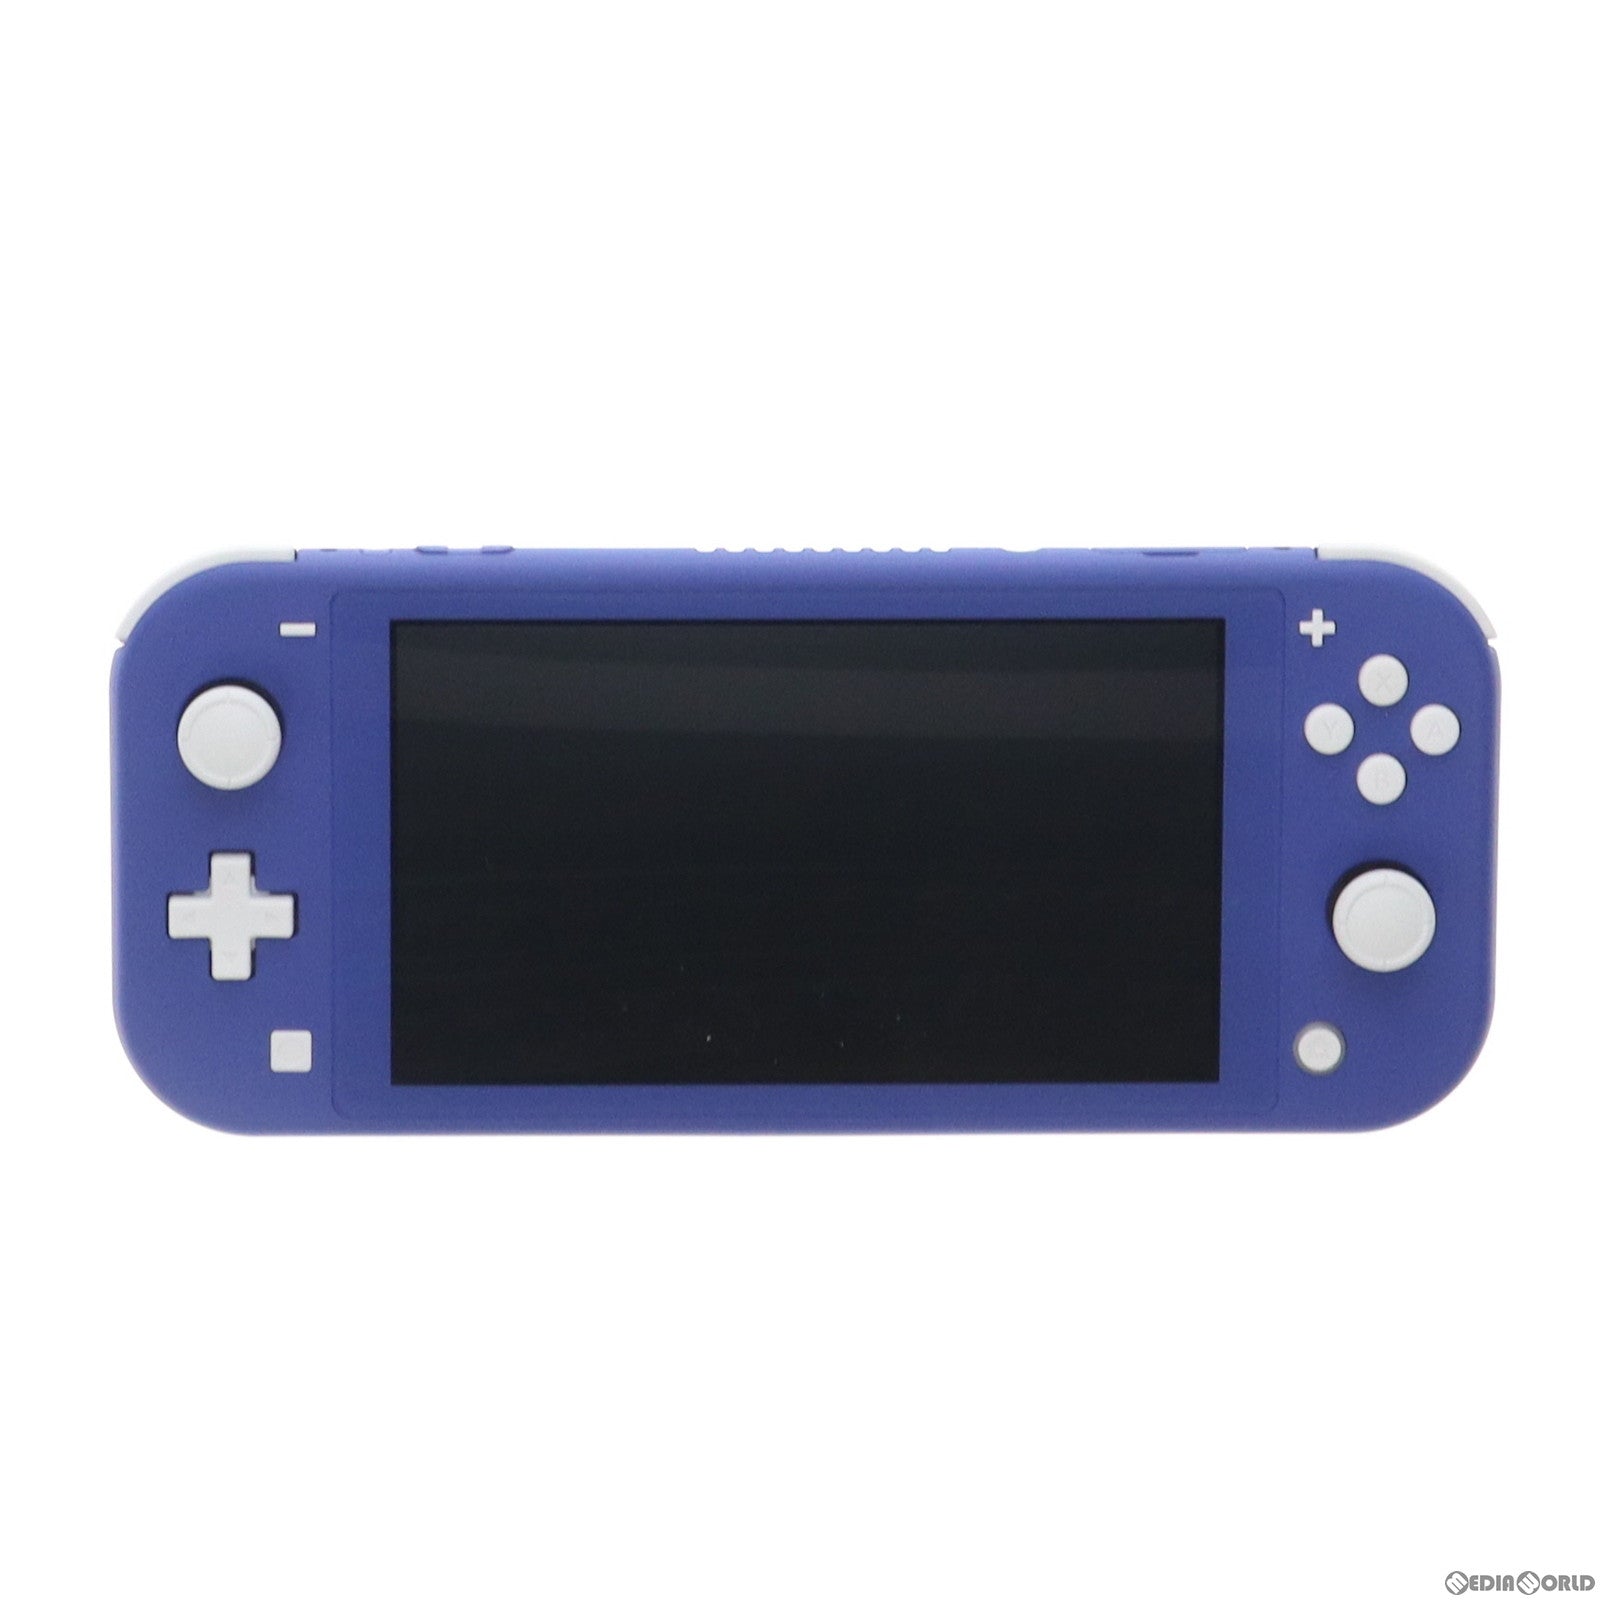 中古即納】[Switch](本体)(未使用)Nintendo Switch Lite(ニンテンドー 